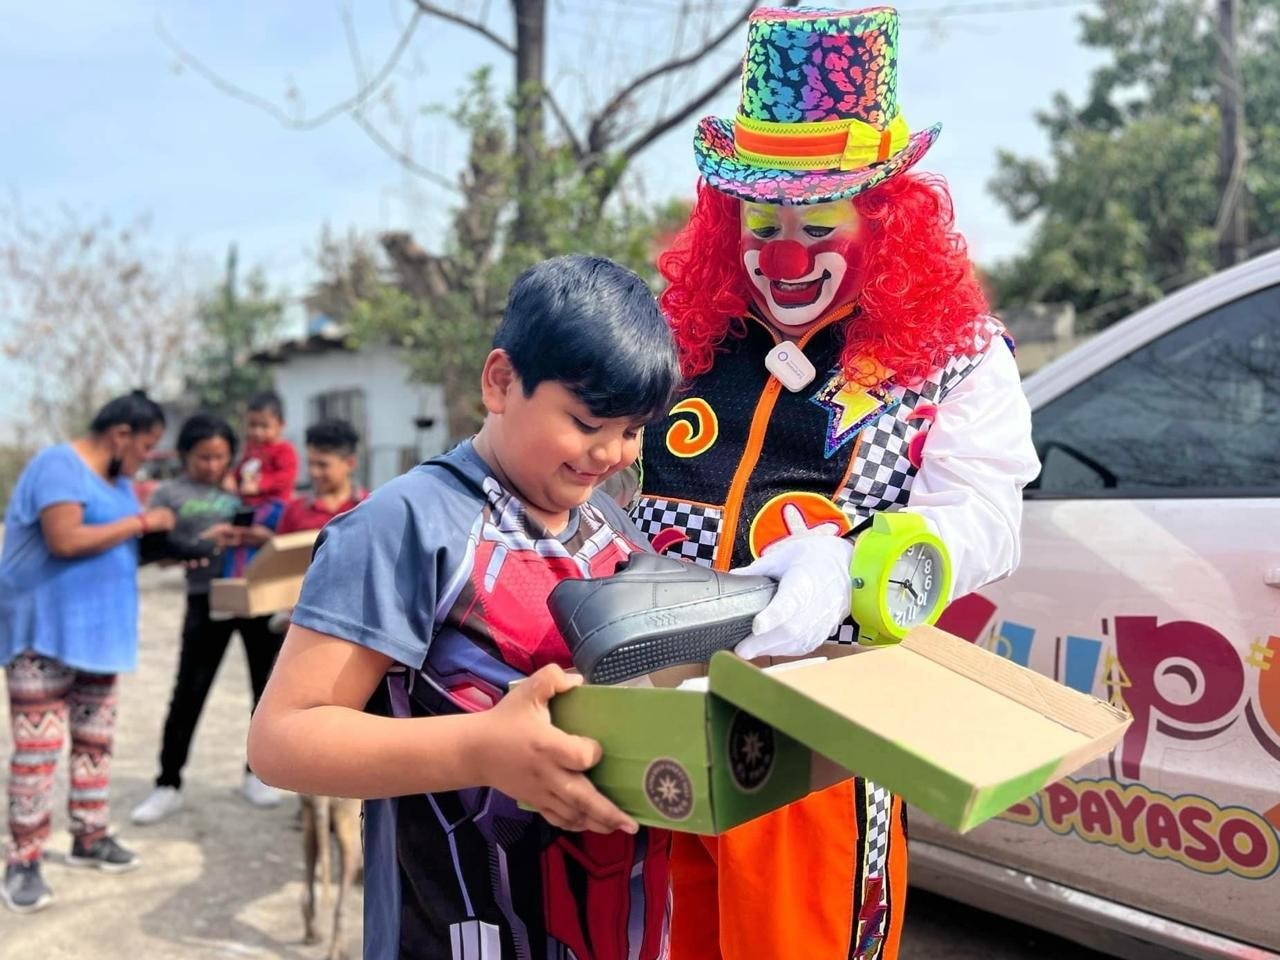 Cupy el payaso regala sonrisas a vecinos de Juárez Nuevo León Foto: Facebook